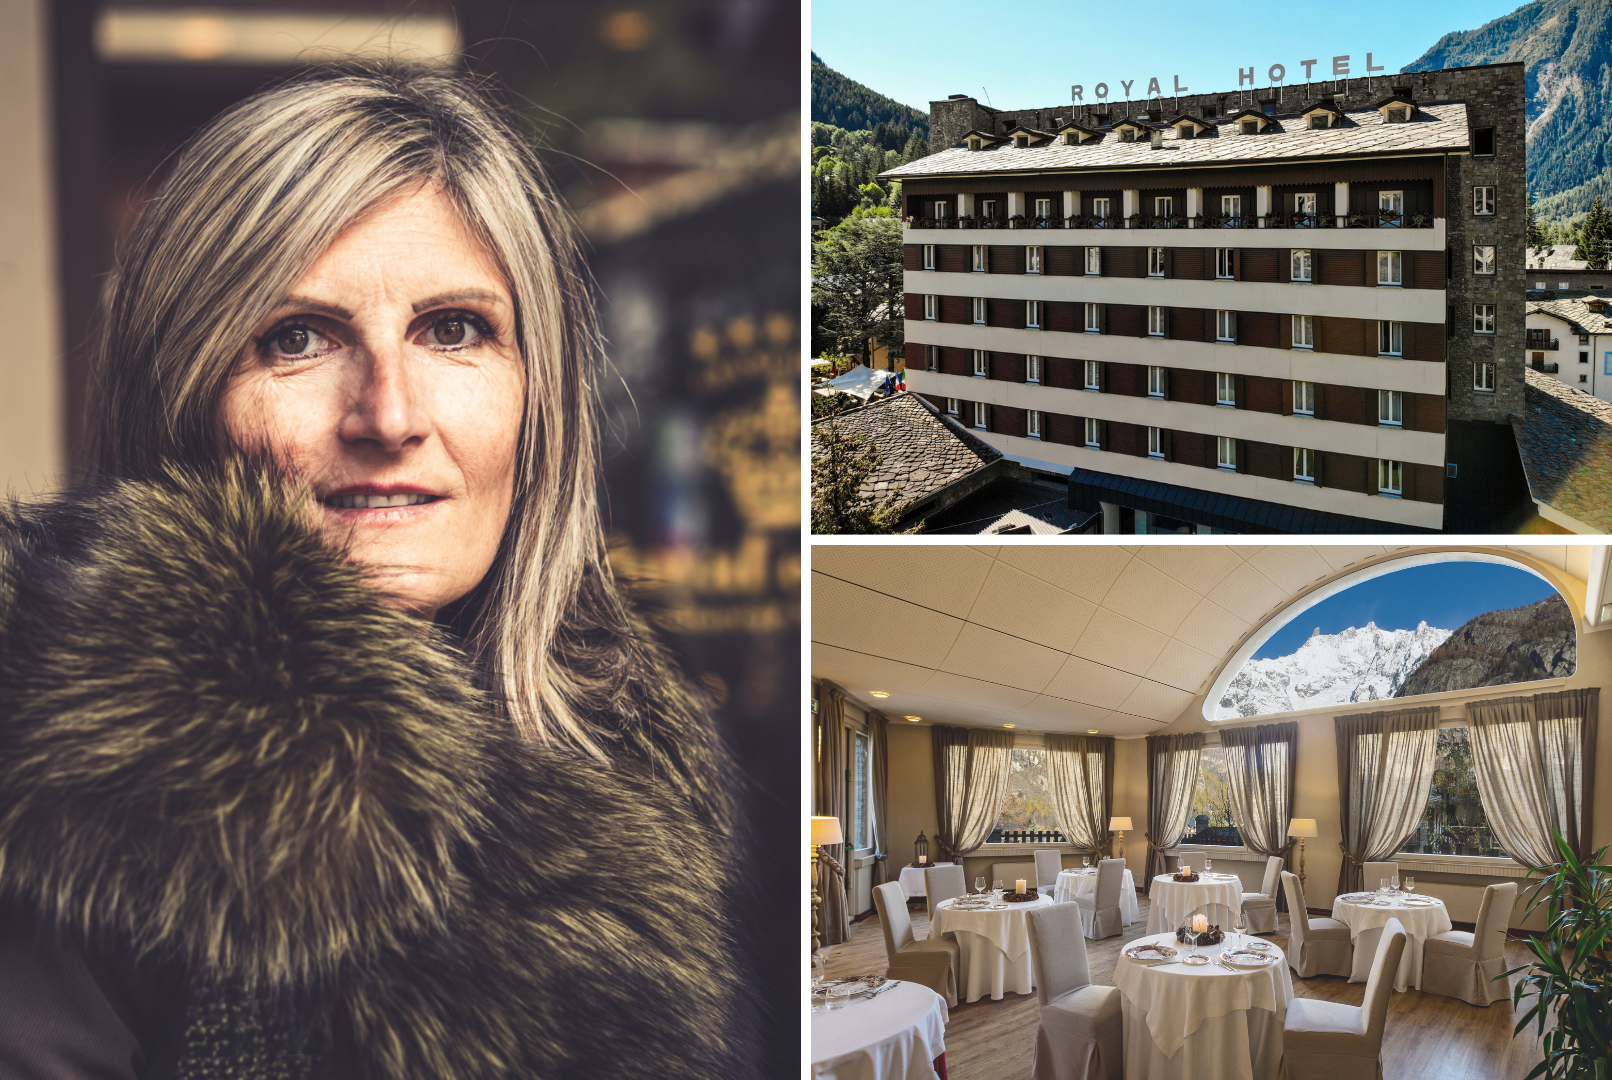 La ristorazione nel mondo alberghiero. Intervista al General Manager del Grand Hotel Royal & Golf di Courmayeur: Veronica Revel Chion